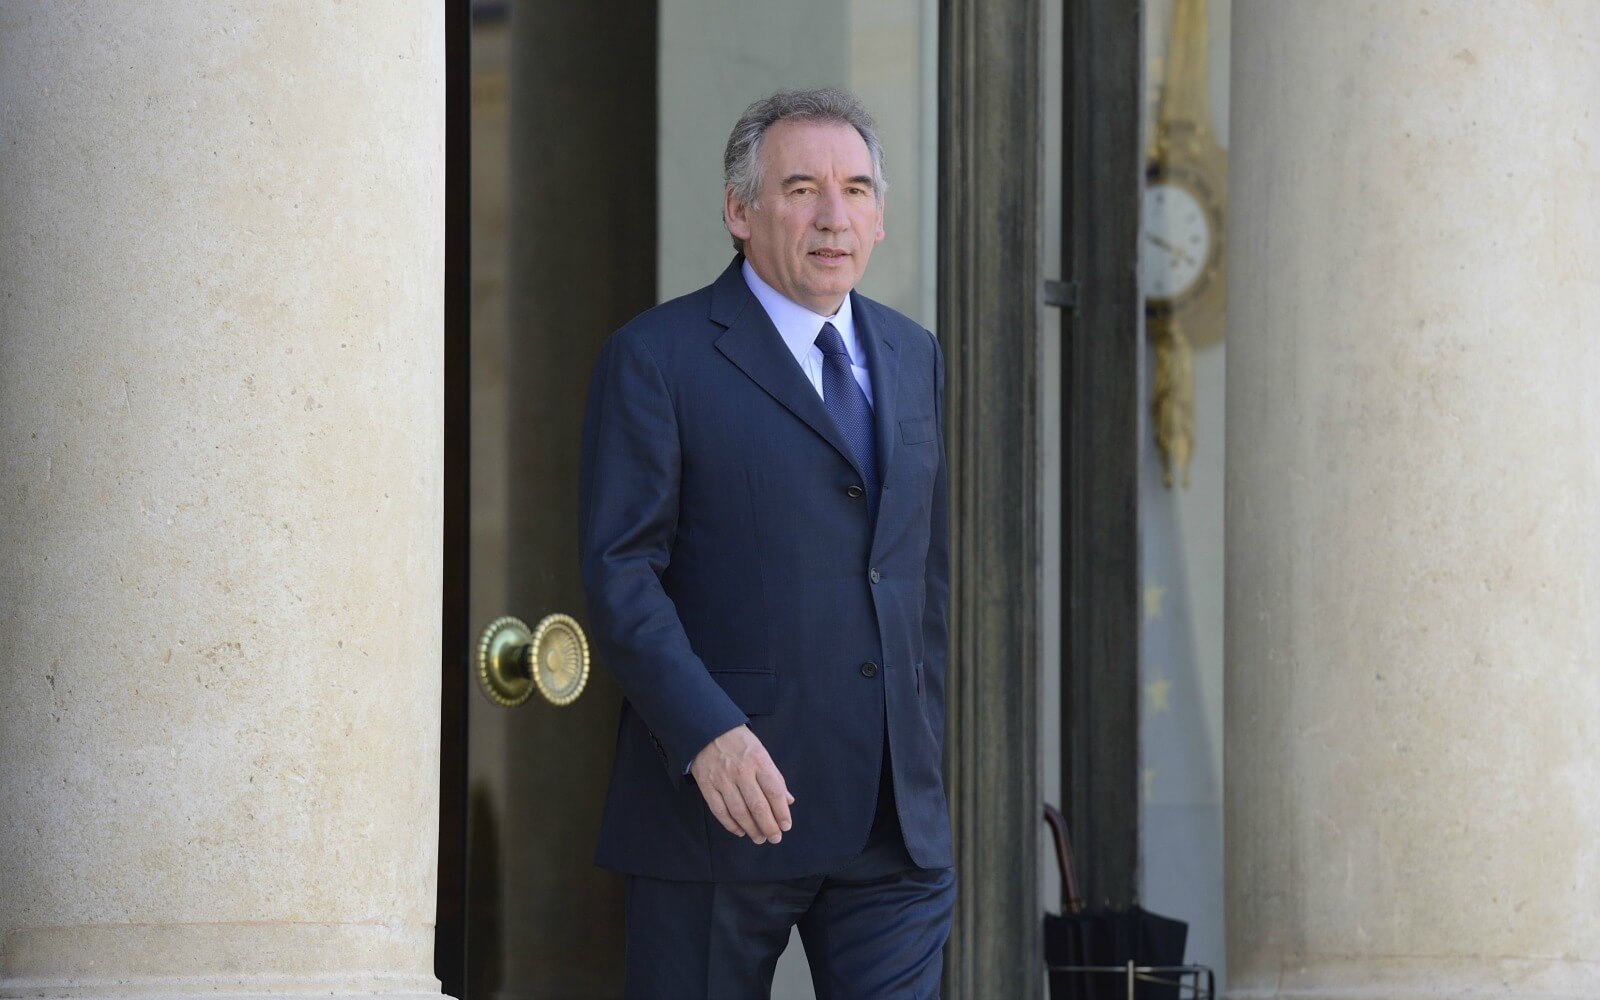 18 juin 2017: le Premier ministre Bayrou démissionne